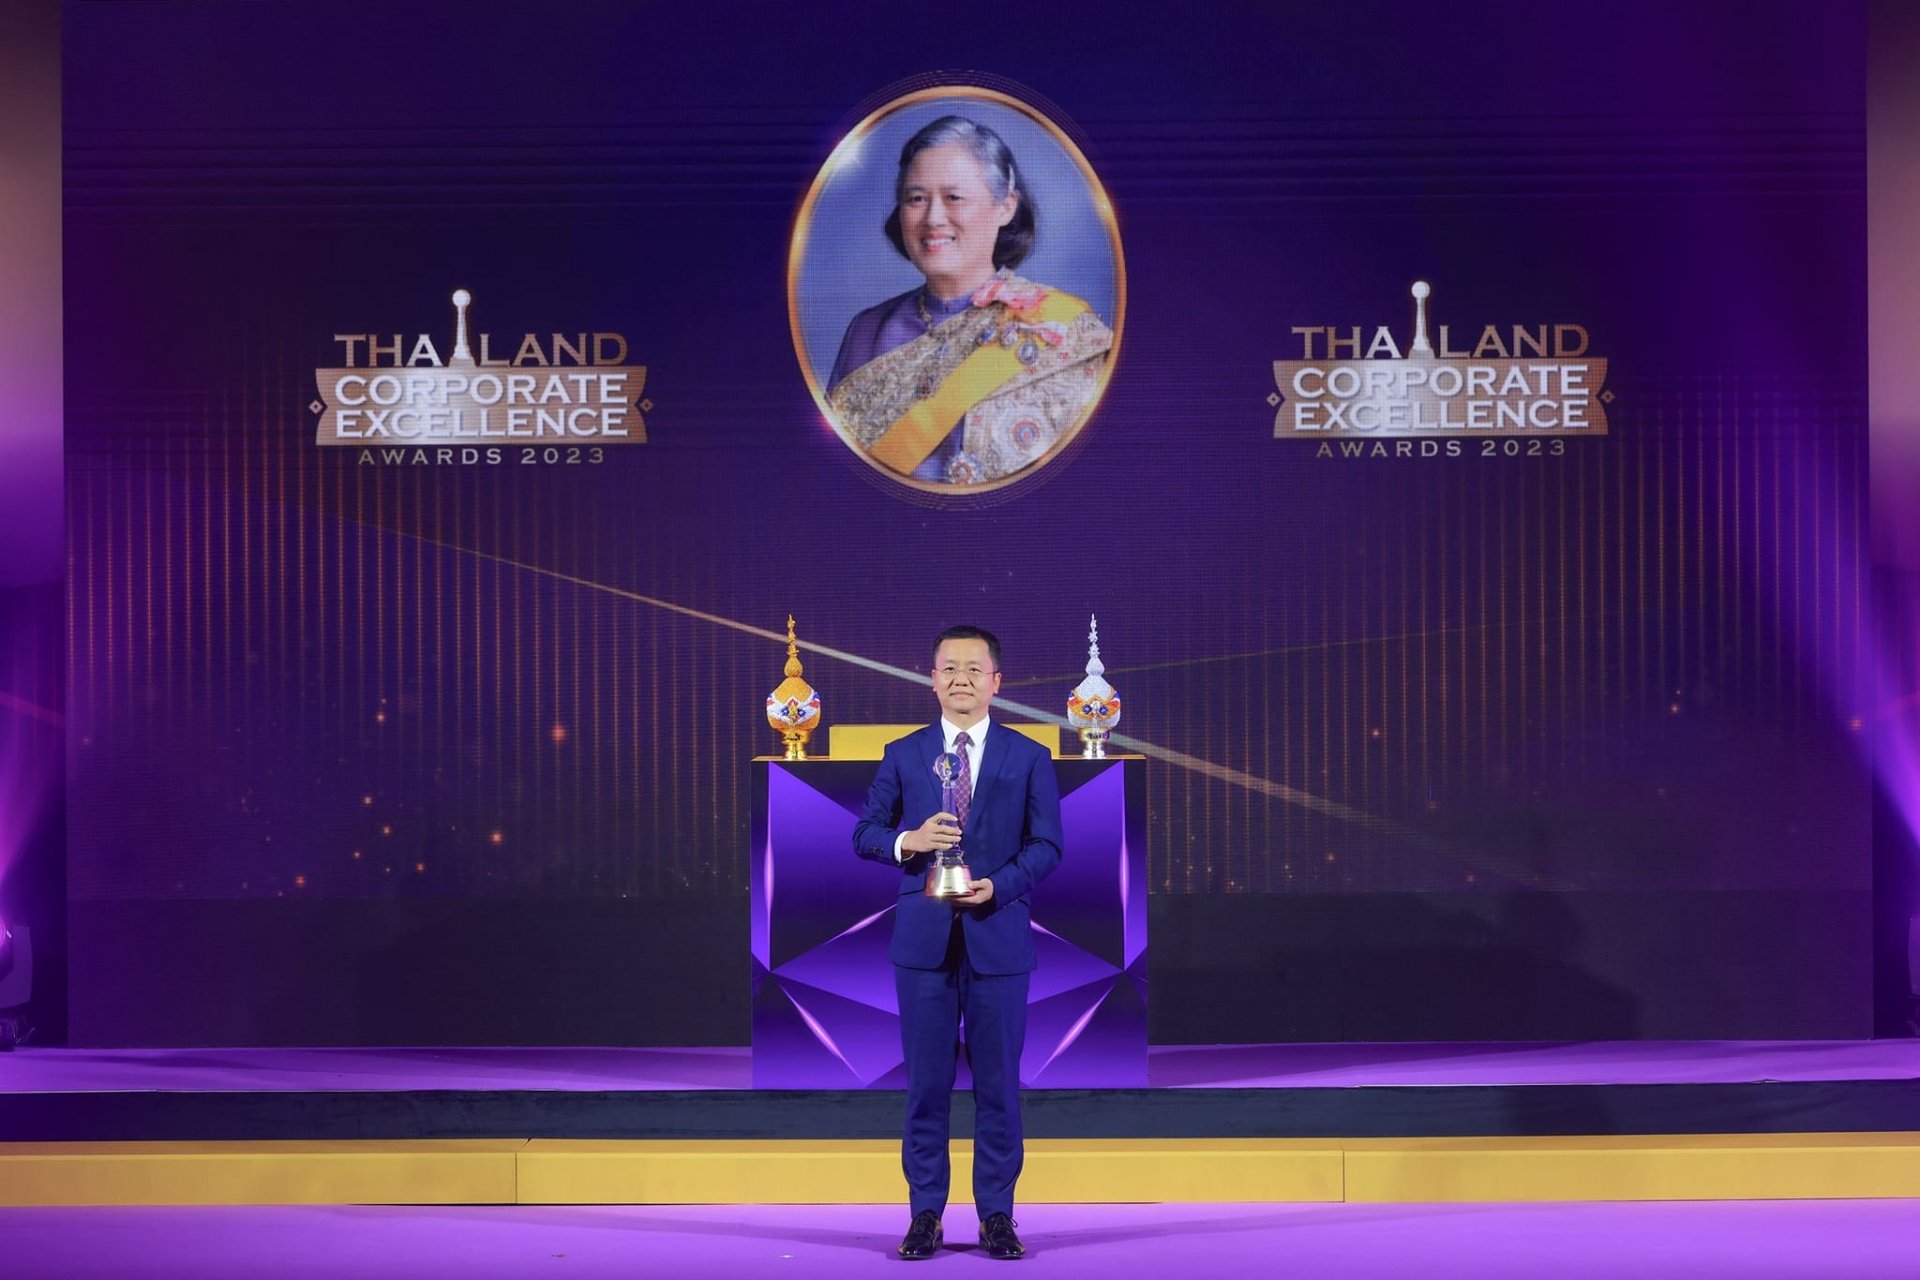 "หัวเว่ย ประเทศไทย" รับรางวัลพระราชทานอันทรงเกียรติ “Thailand Corporate Excellence Awards 2023” 